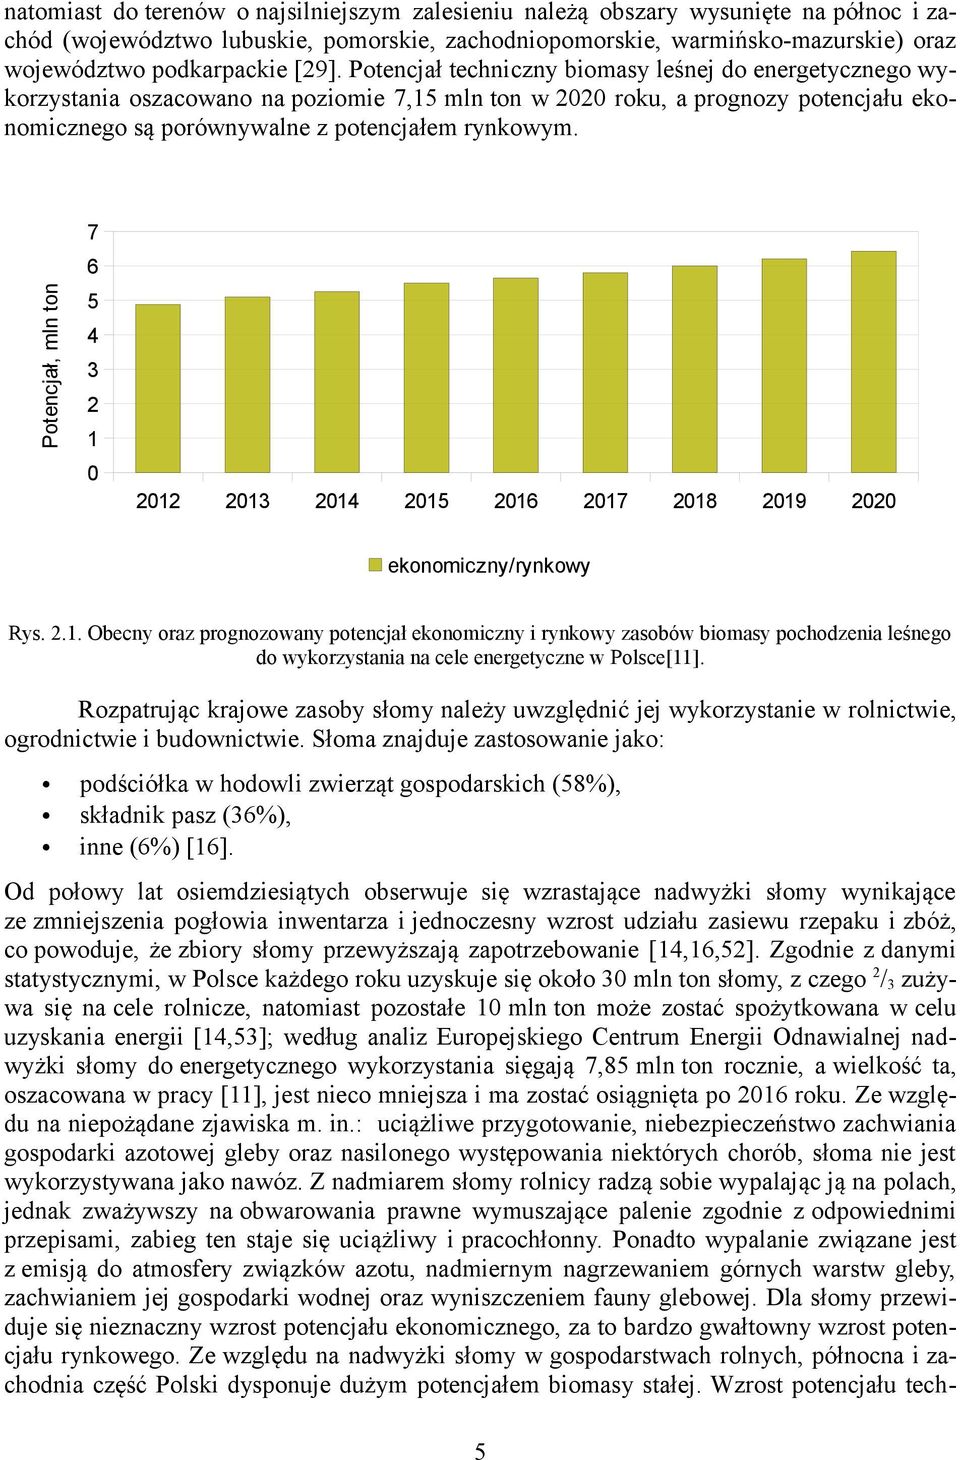 7 Potencjał, mln ton 6 5 4 3 2 1 0 2012 2013 2014 2015 2016 2017 2018 2019 2020 ekonomiczny/rynkowy Rys. 2.1. Obecny oraz prognozowany potencjał ekonomiczny i rynkowy zasobów biomasy pochodzenia leśnego do wykorzystania na cele energetyczne w Polsce[11].